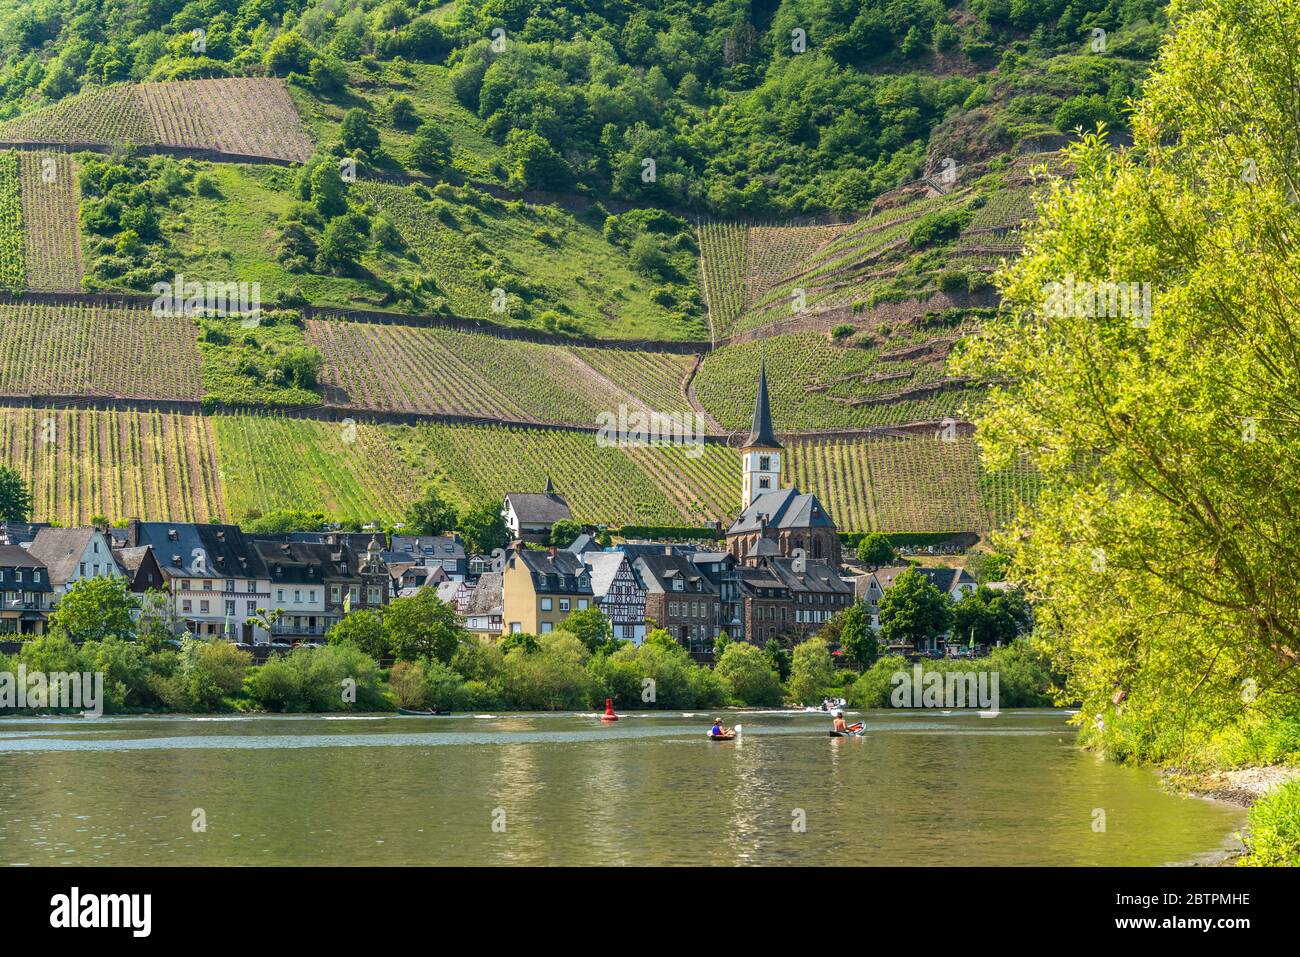 Weinort Bremm an der Mosel  und die Weinberge am Calmont, Rheinland-Pfalz, Deutschland  |  Wine village of Bremm at the river Moselle and the sloped v Stock Photo